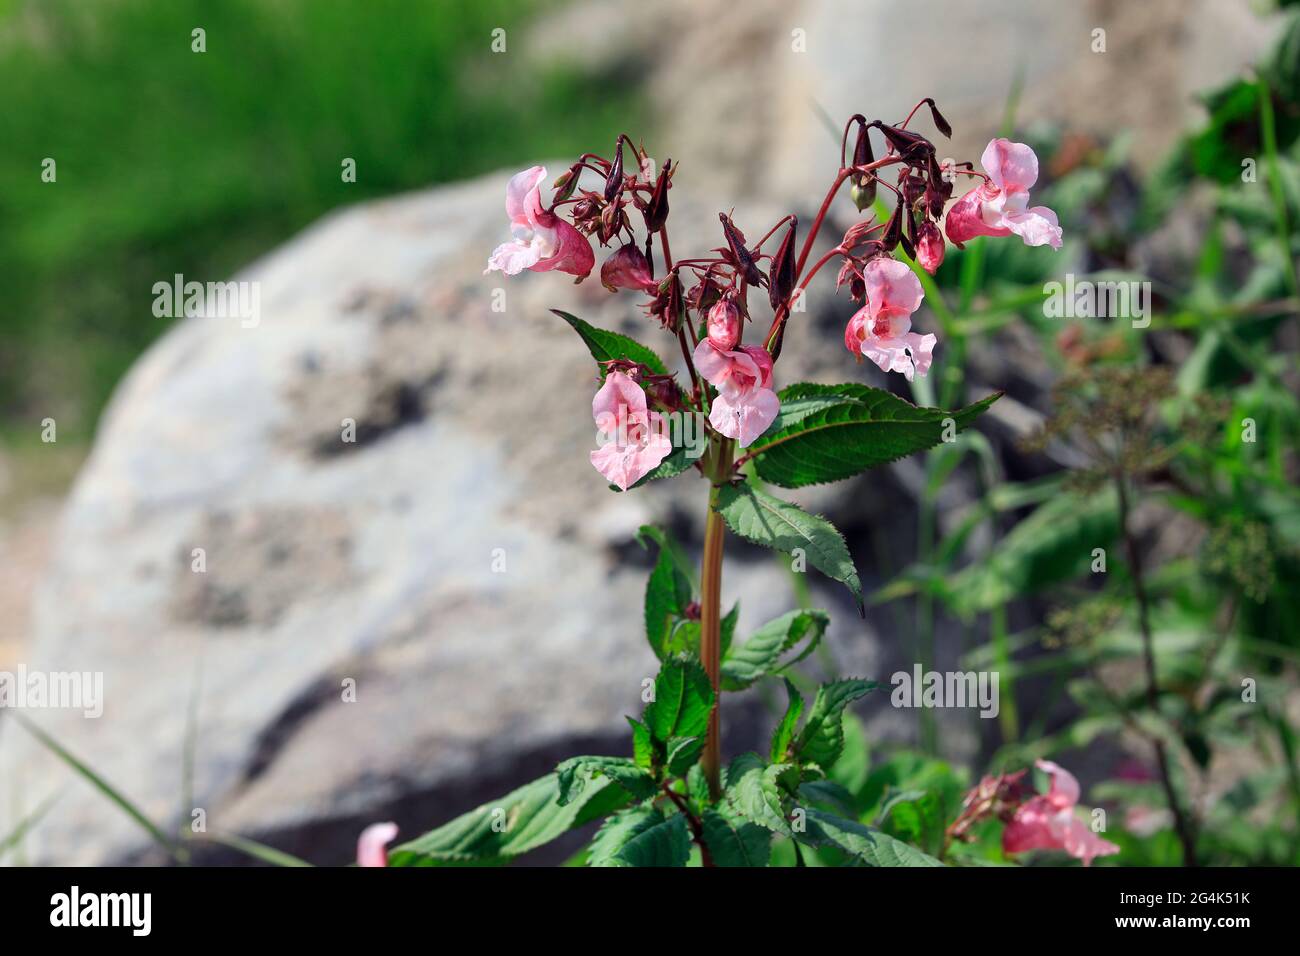 Impatiens glandulifera, le balsam himalayan, est une grande plante annuelle originaire de l'Himalaya. Il est considéré comme une espèce envahissante dans de nombreuses régions. Banque D'Images